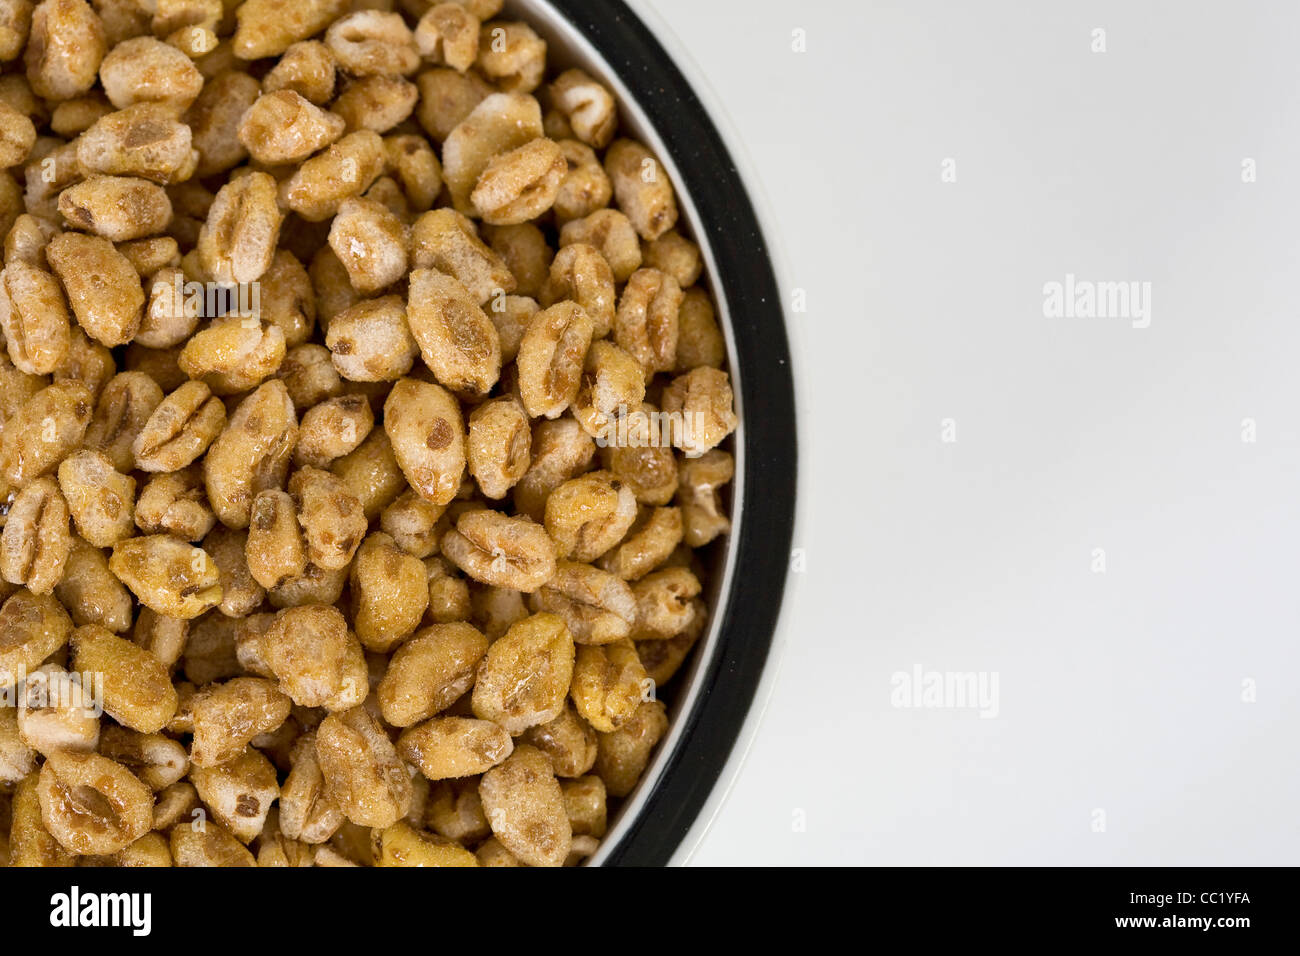 Golden Crisp breakfast cereal. Stock Photo